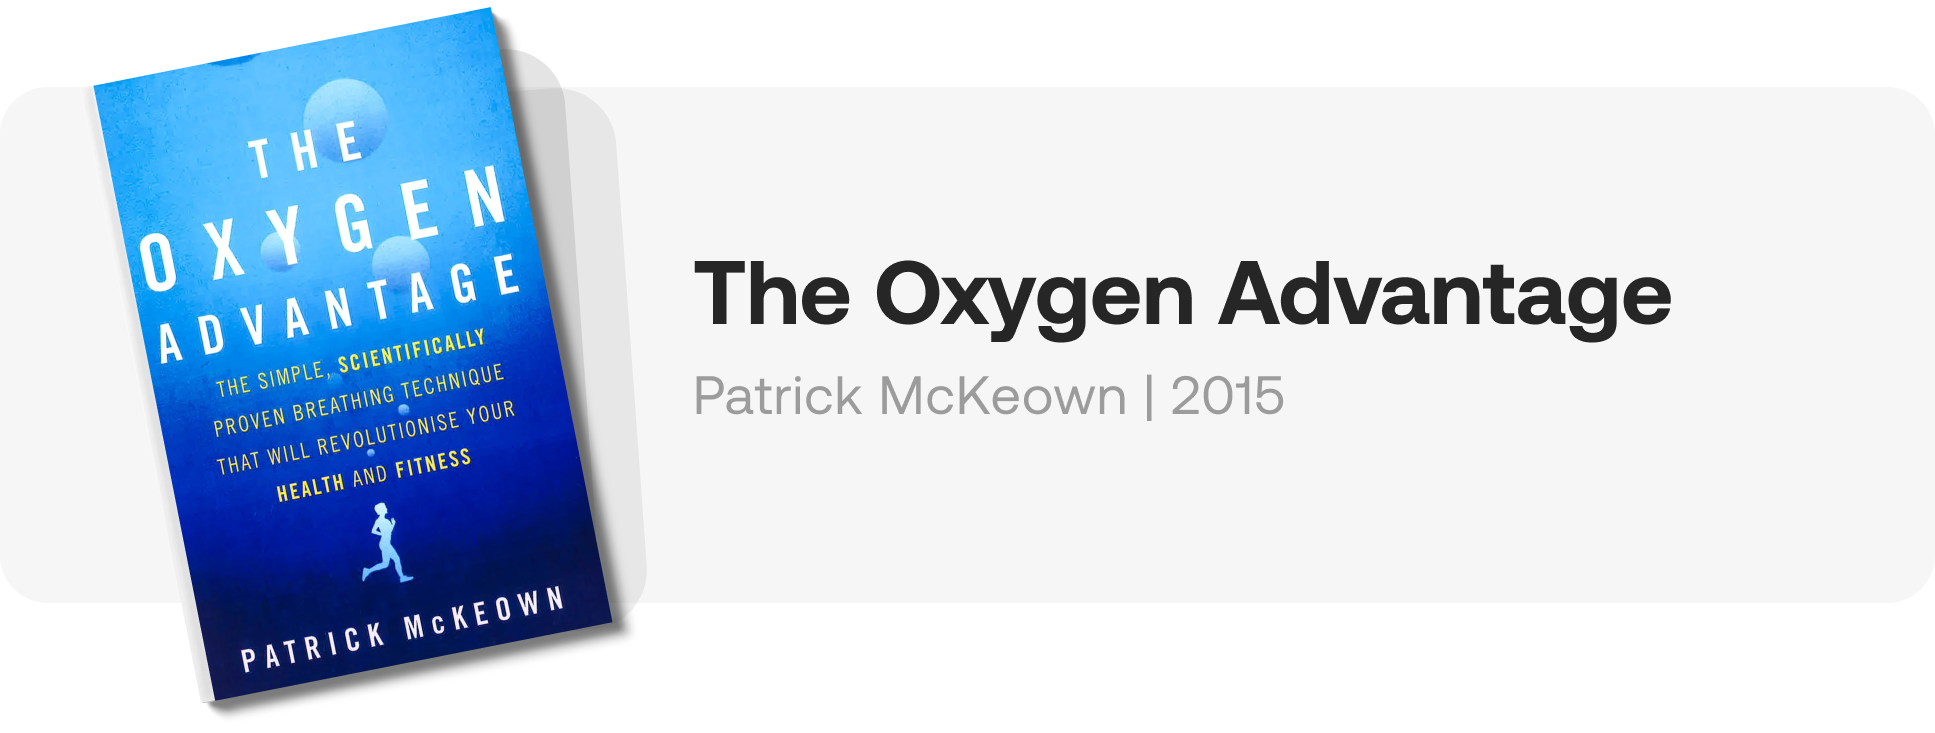 Oxygen Advantage Book Cover Patrick McKeown